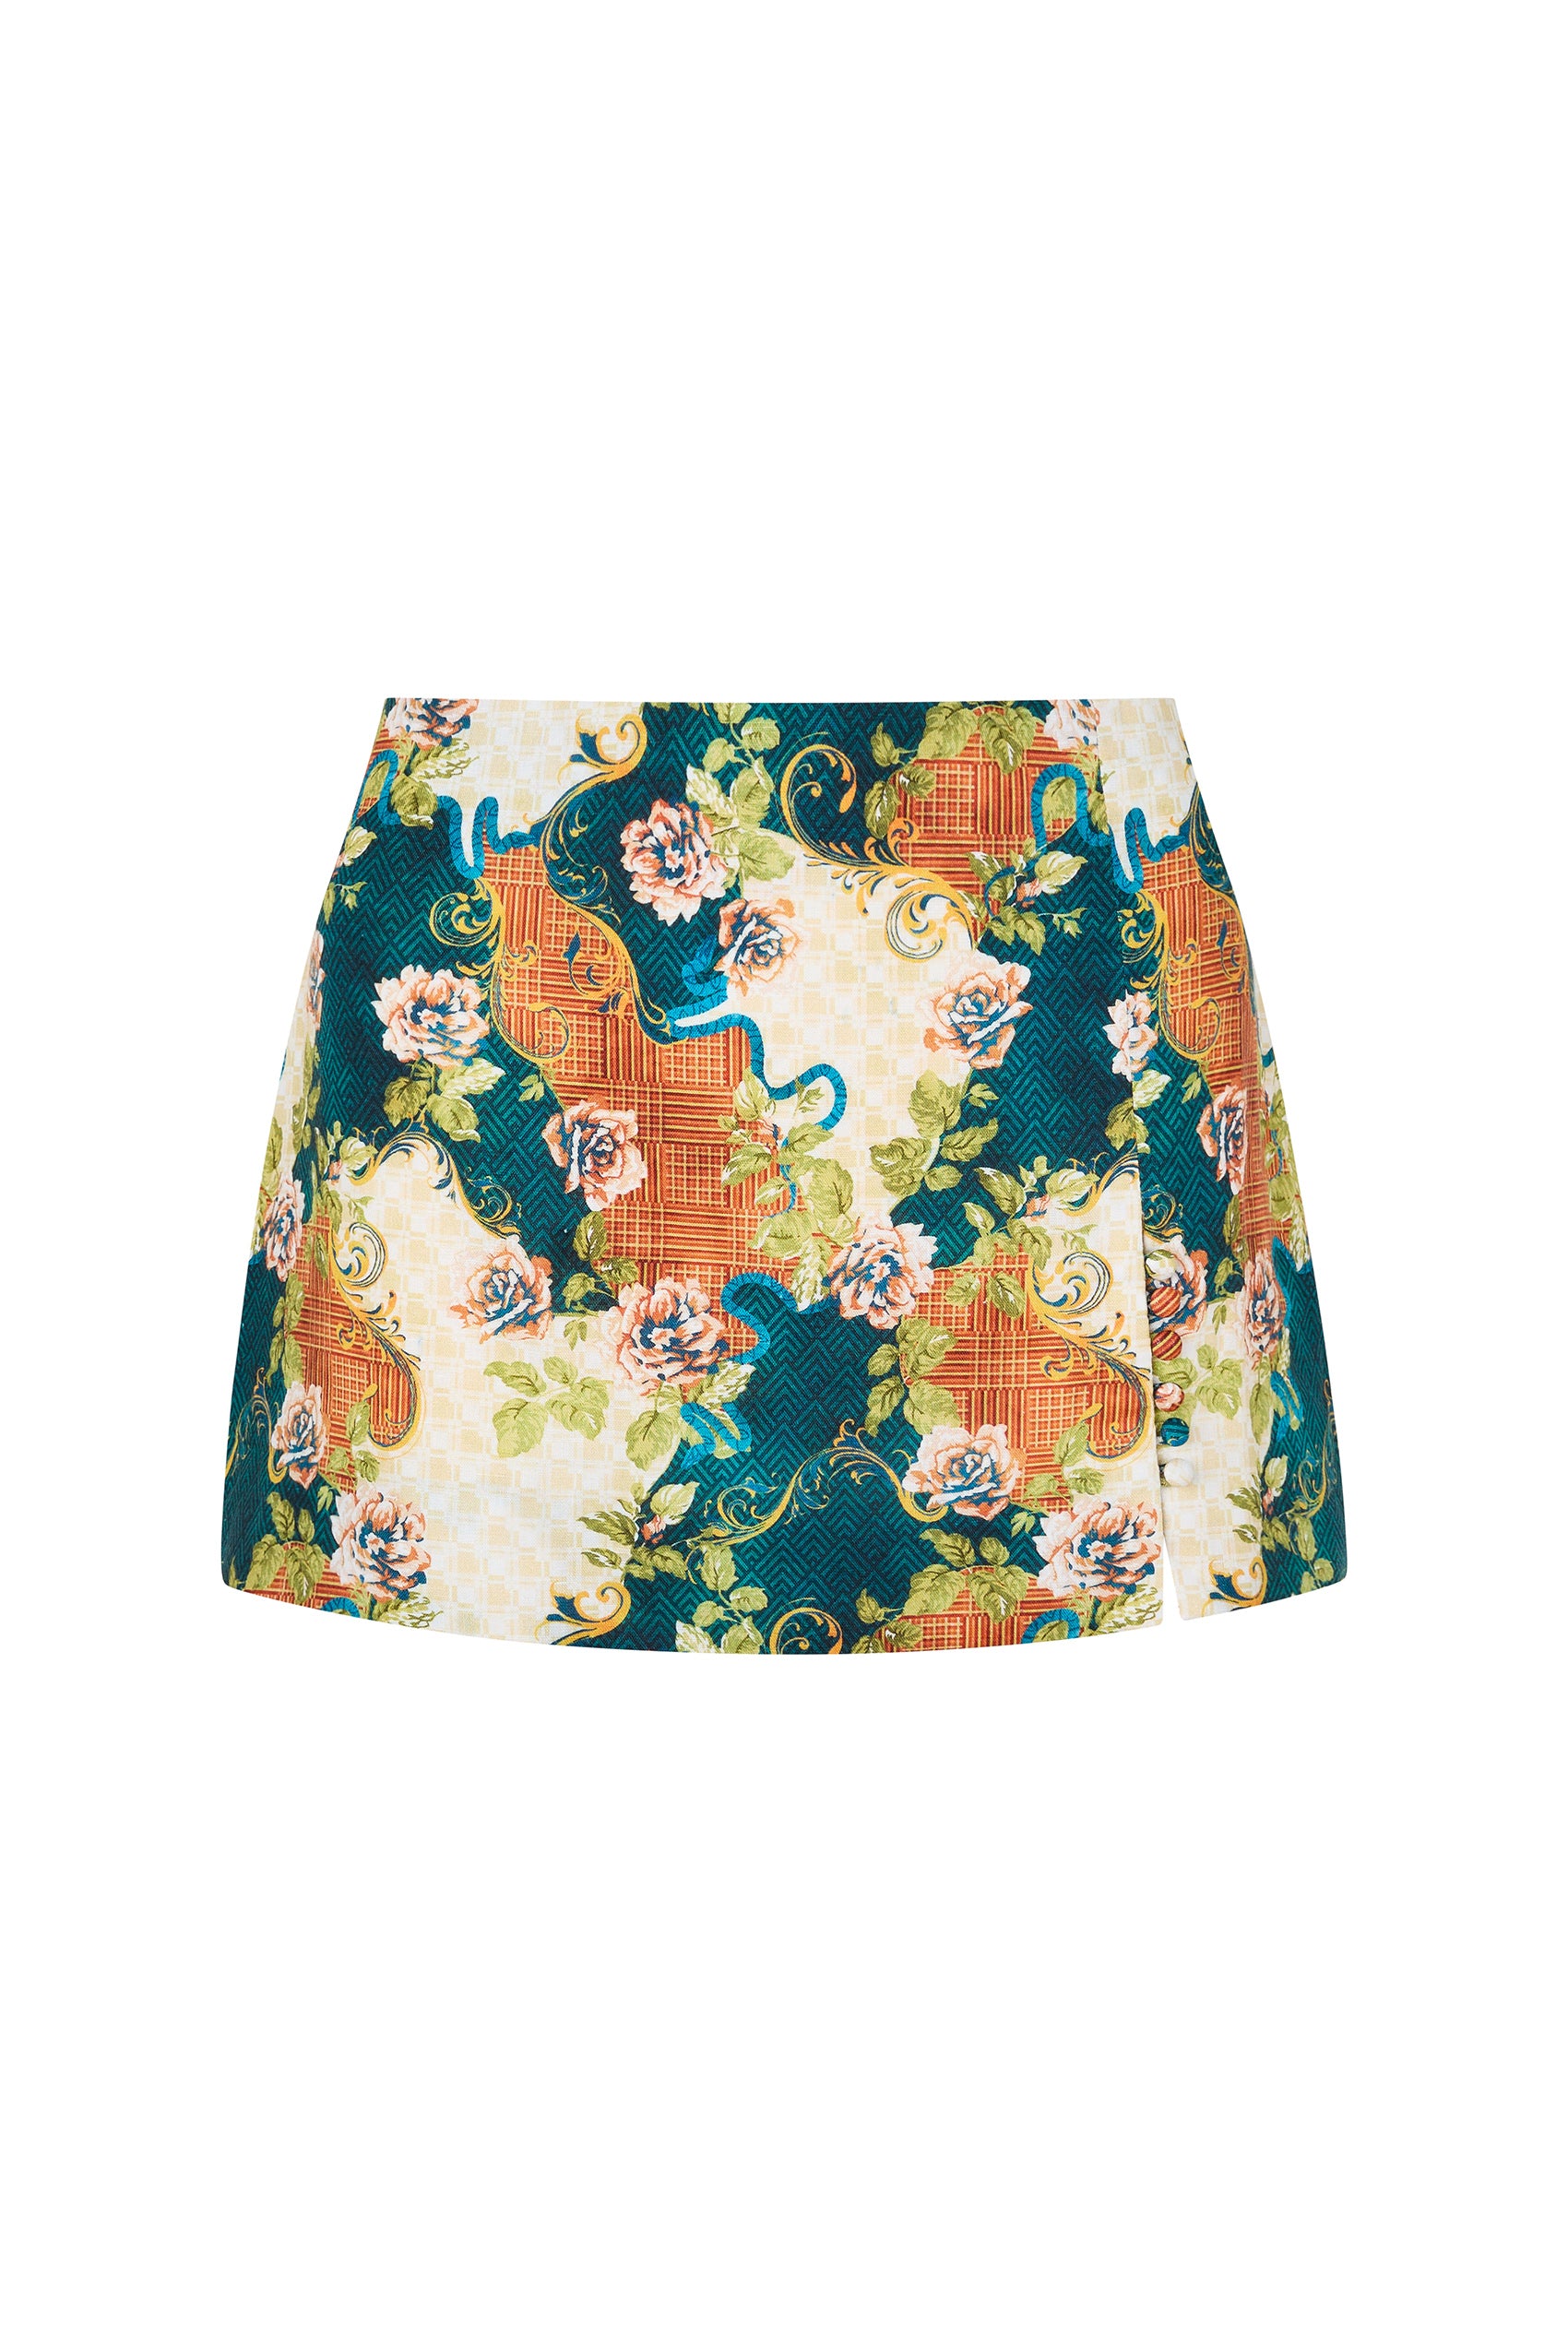 Aurelia Mini Skirt in Antigua